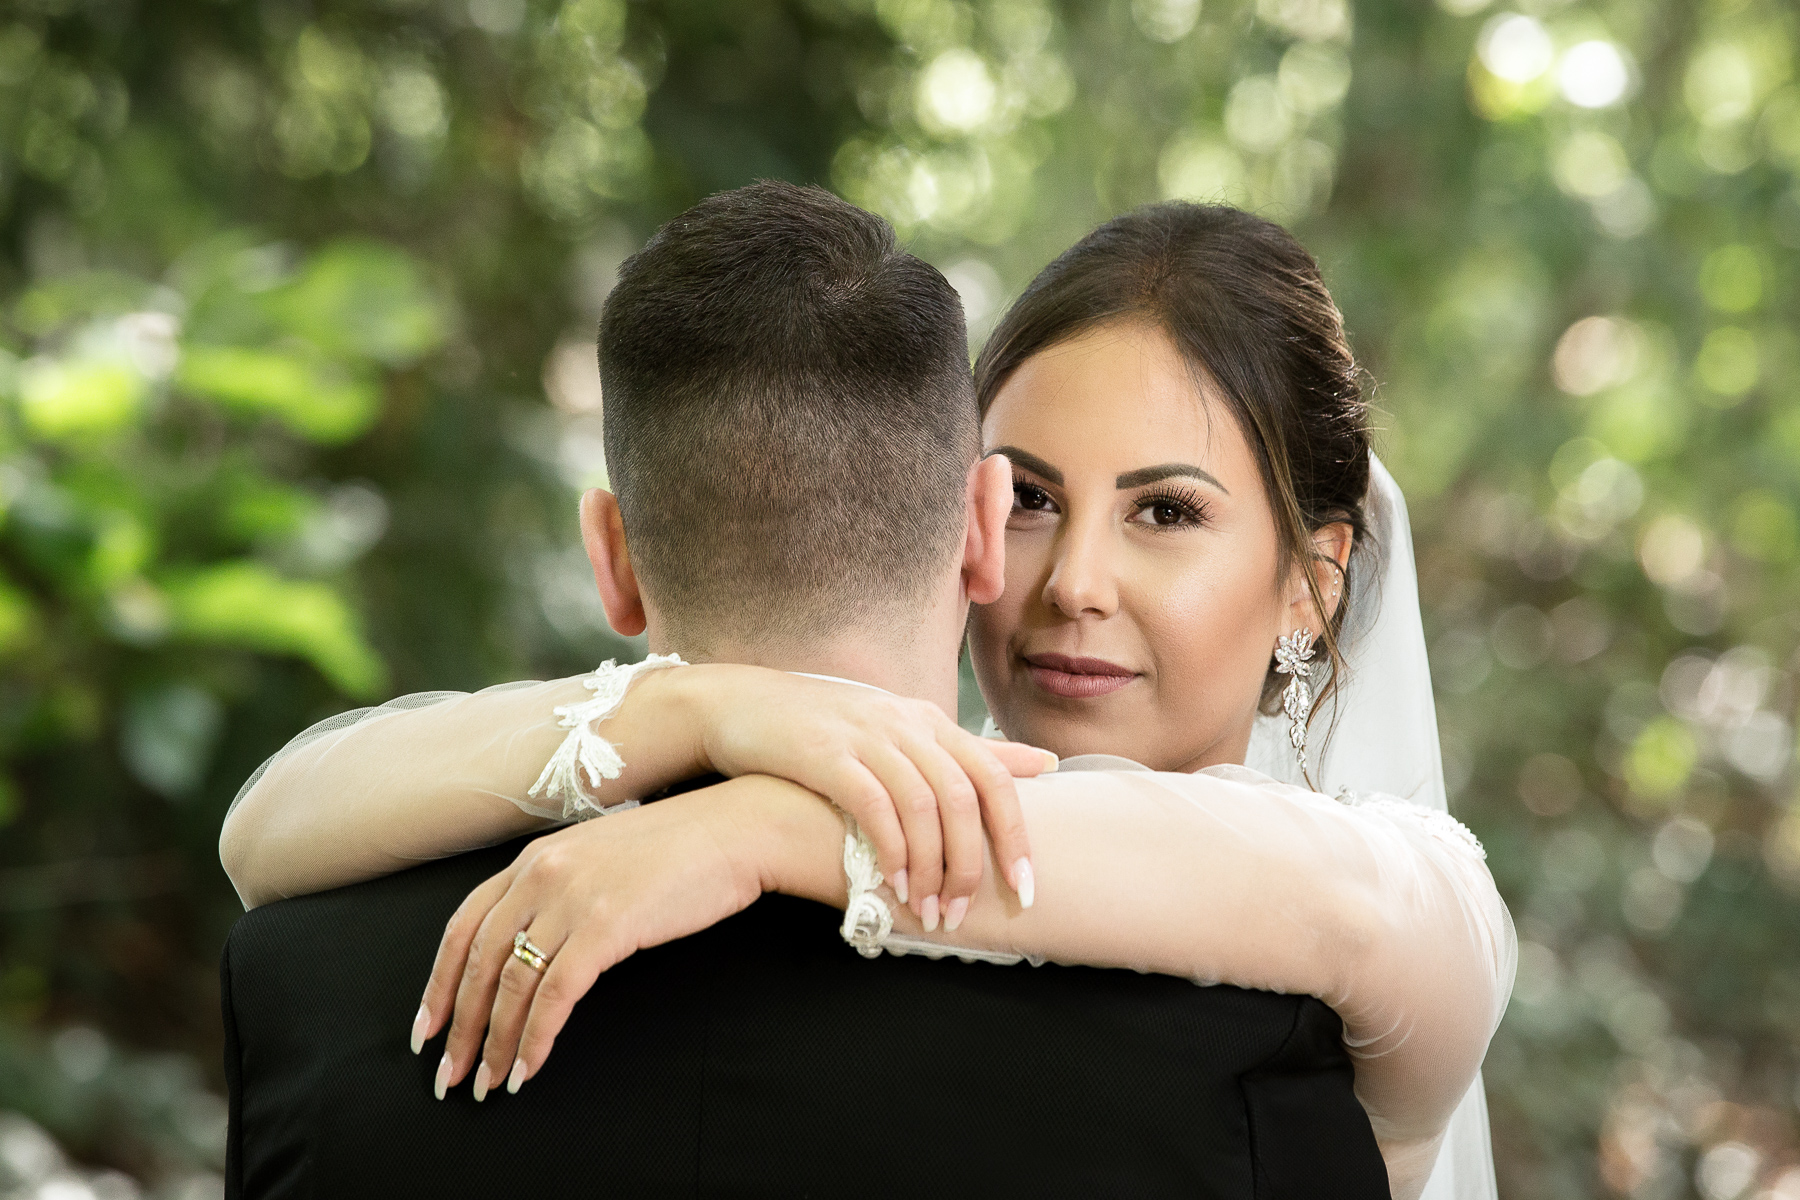 Der Bräutigam steht mit dem Rücken zur Kamera, während die Braut ihn umarmt und frontal in die Kamera schaut.